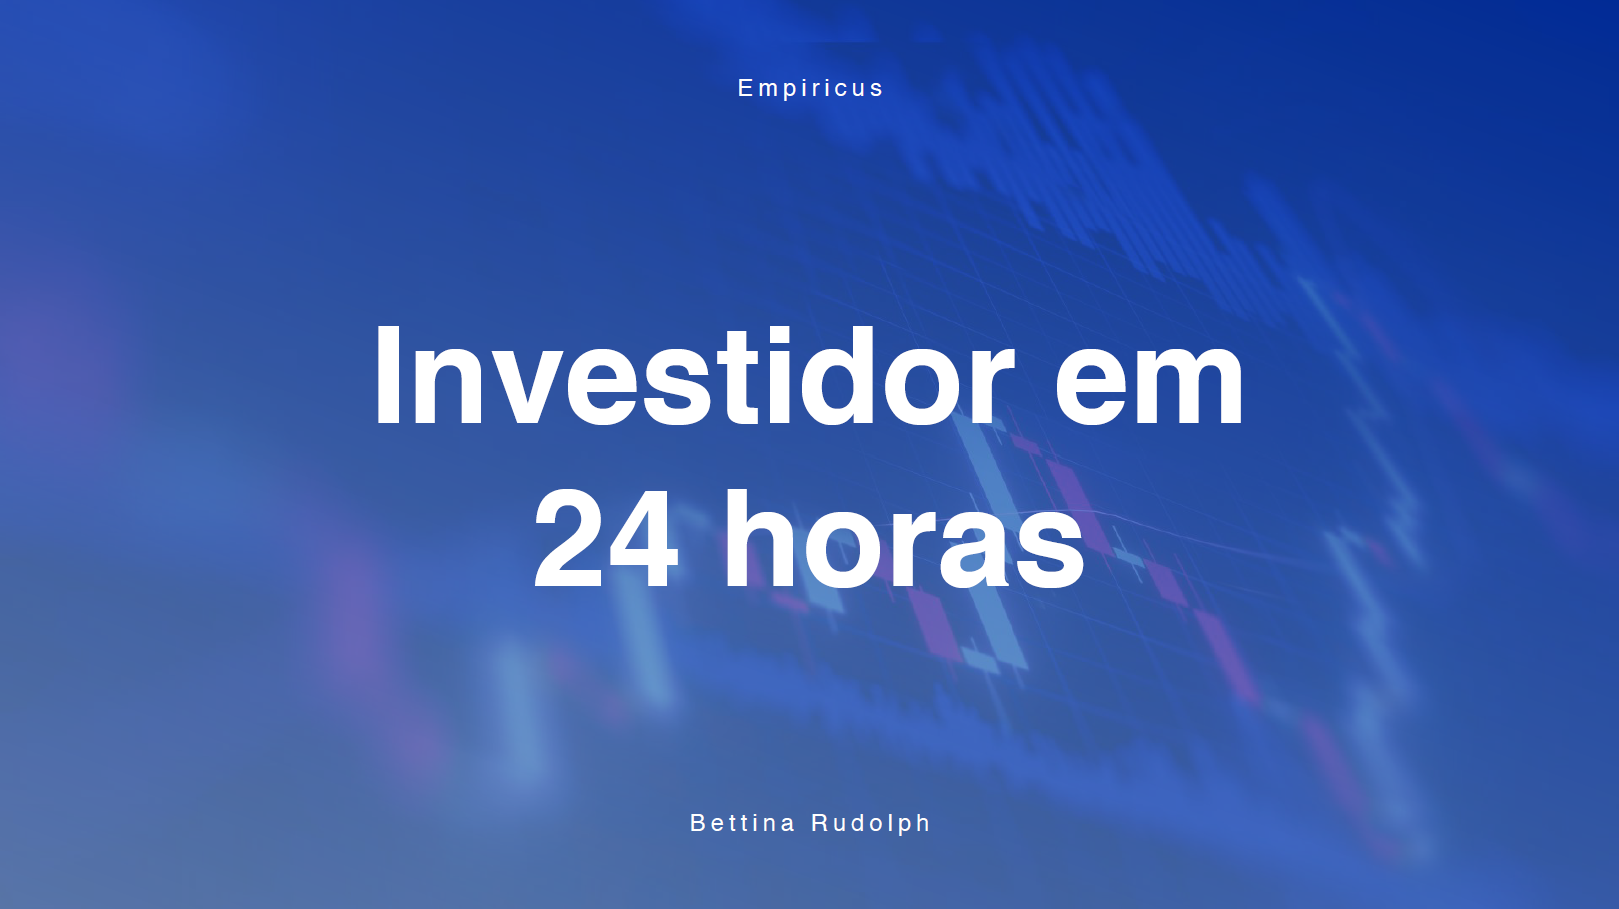 Empiricus Research - Investidor em 24 Horas